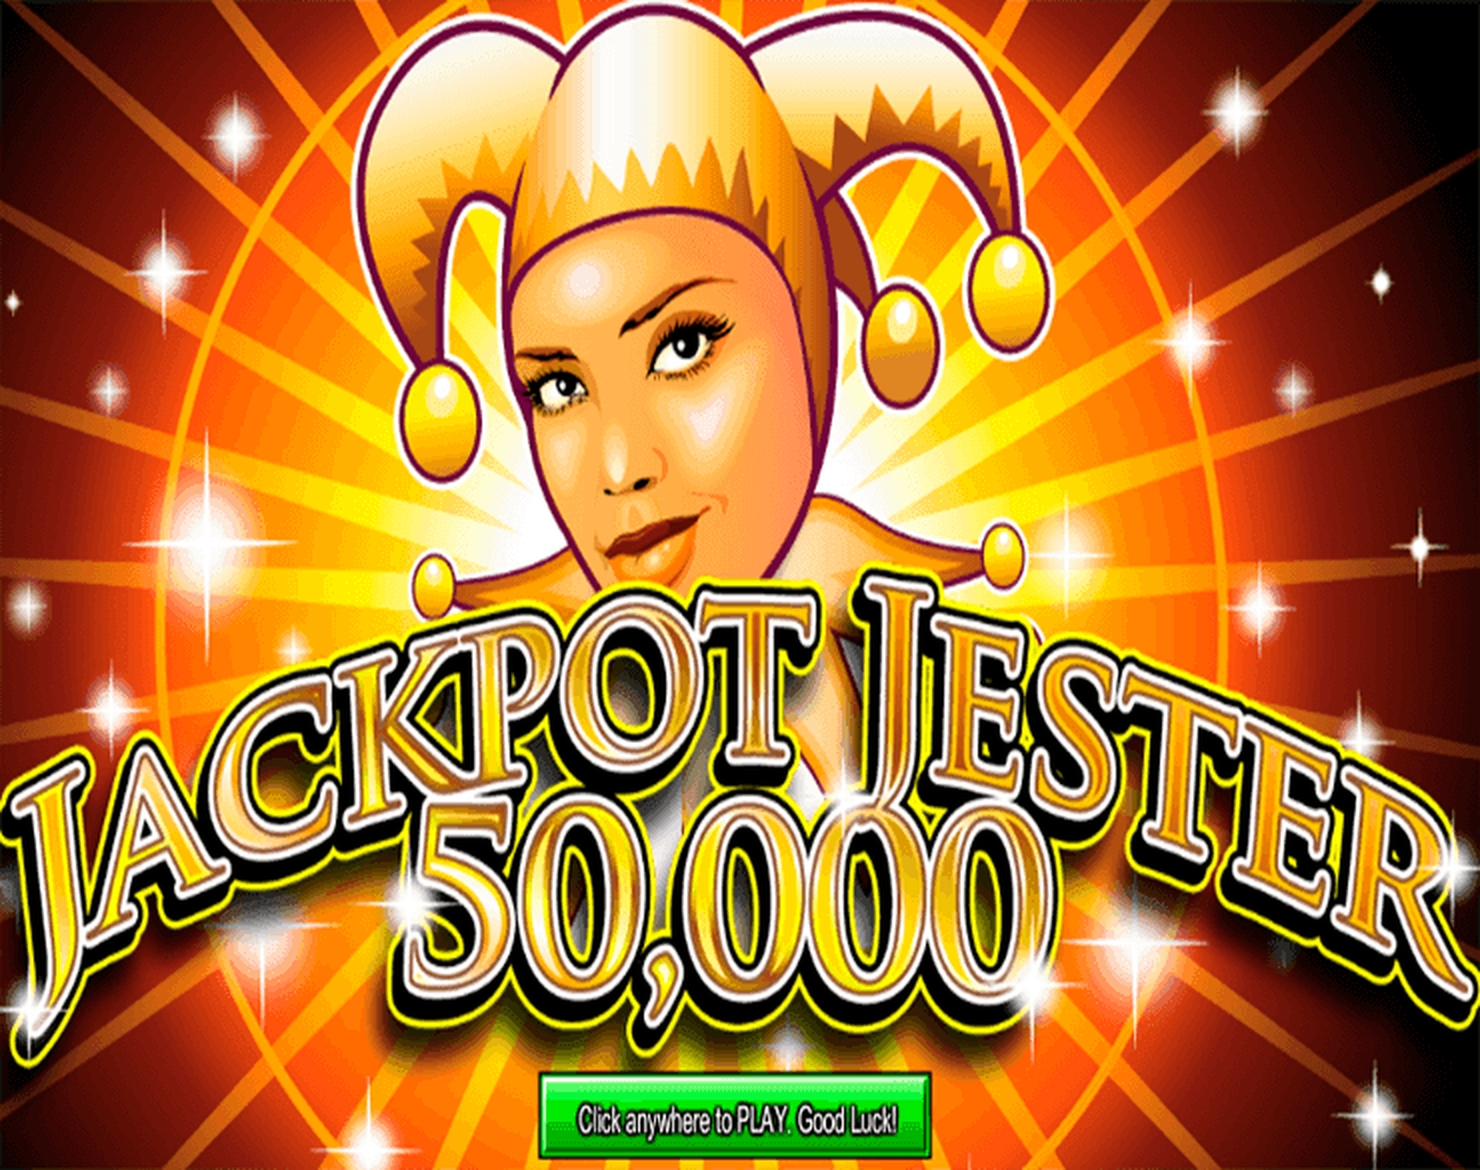 Jackpot Jester 50,000 demo